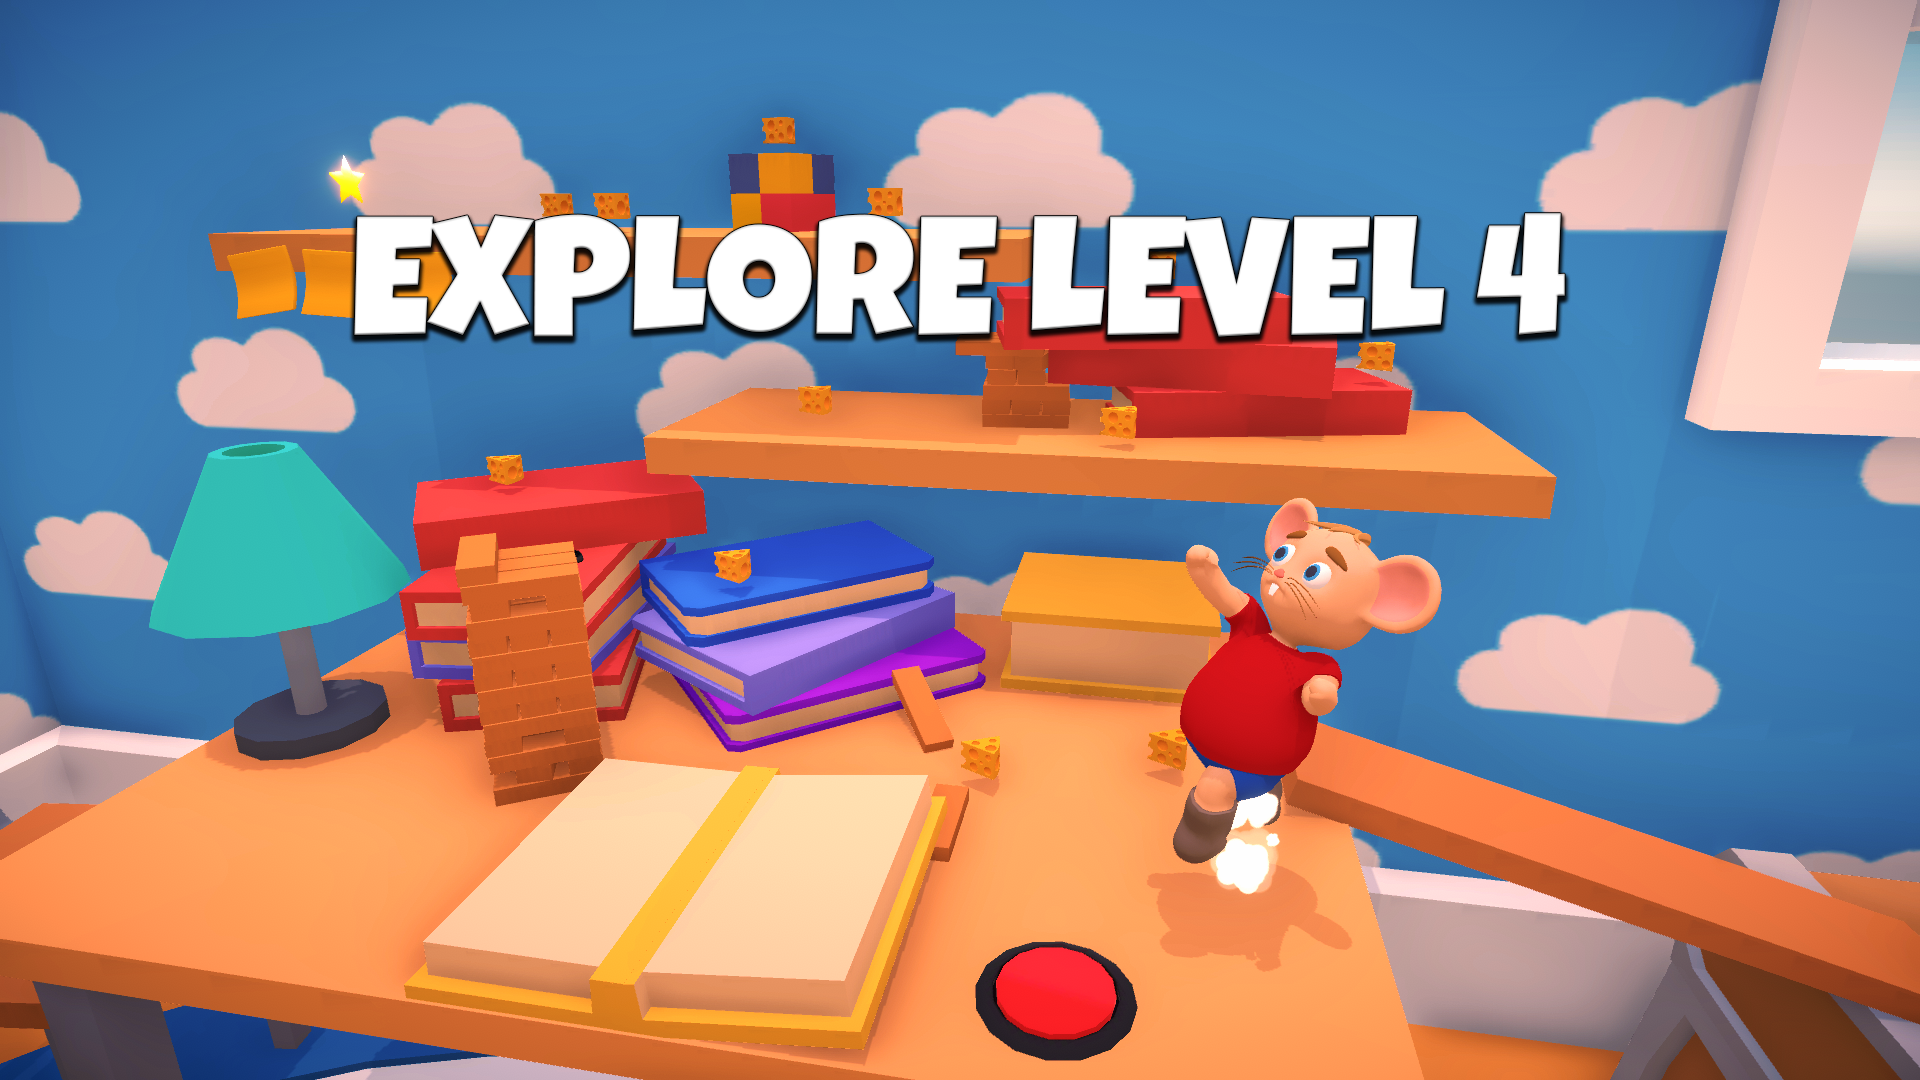 Icon for Explore Level 4